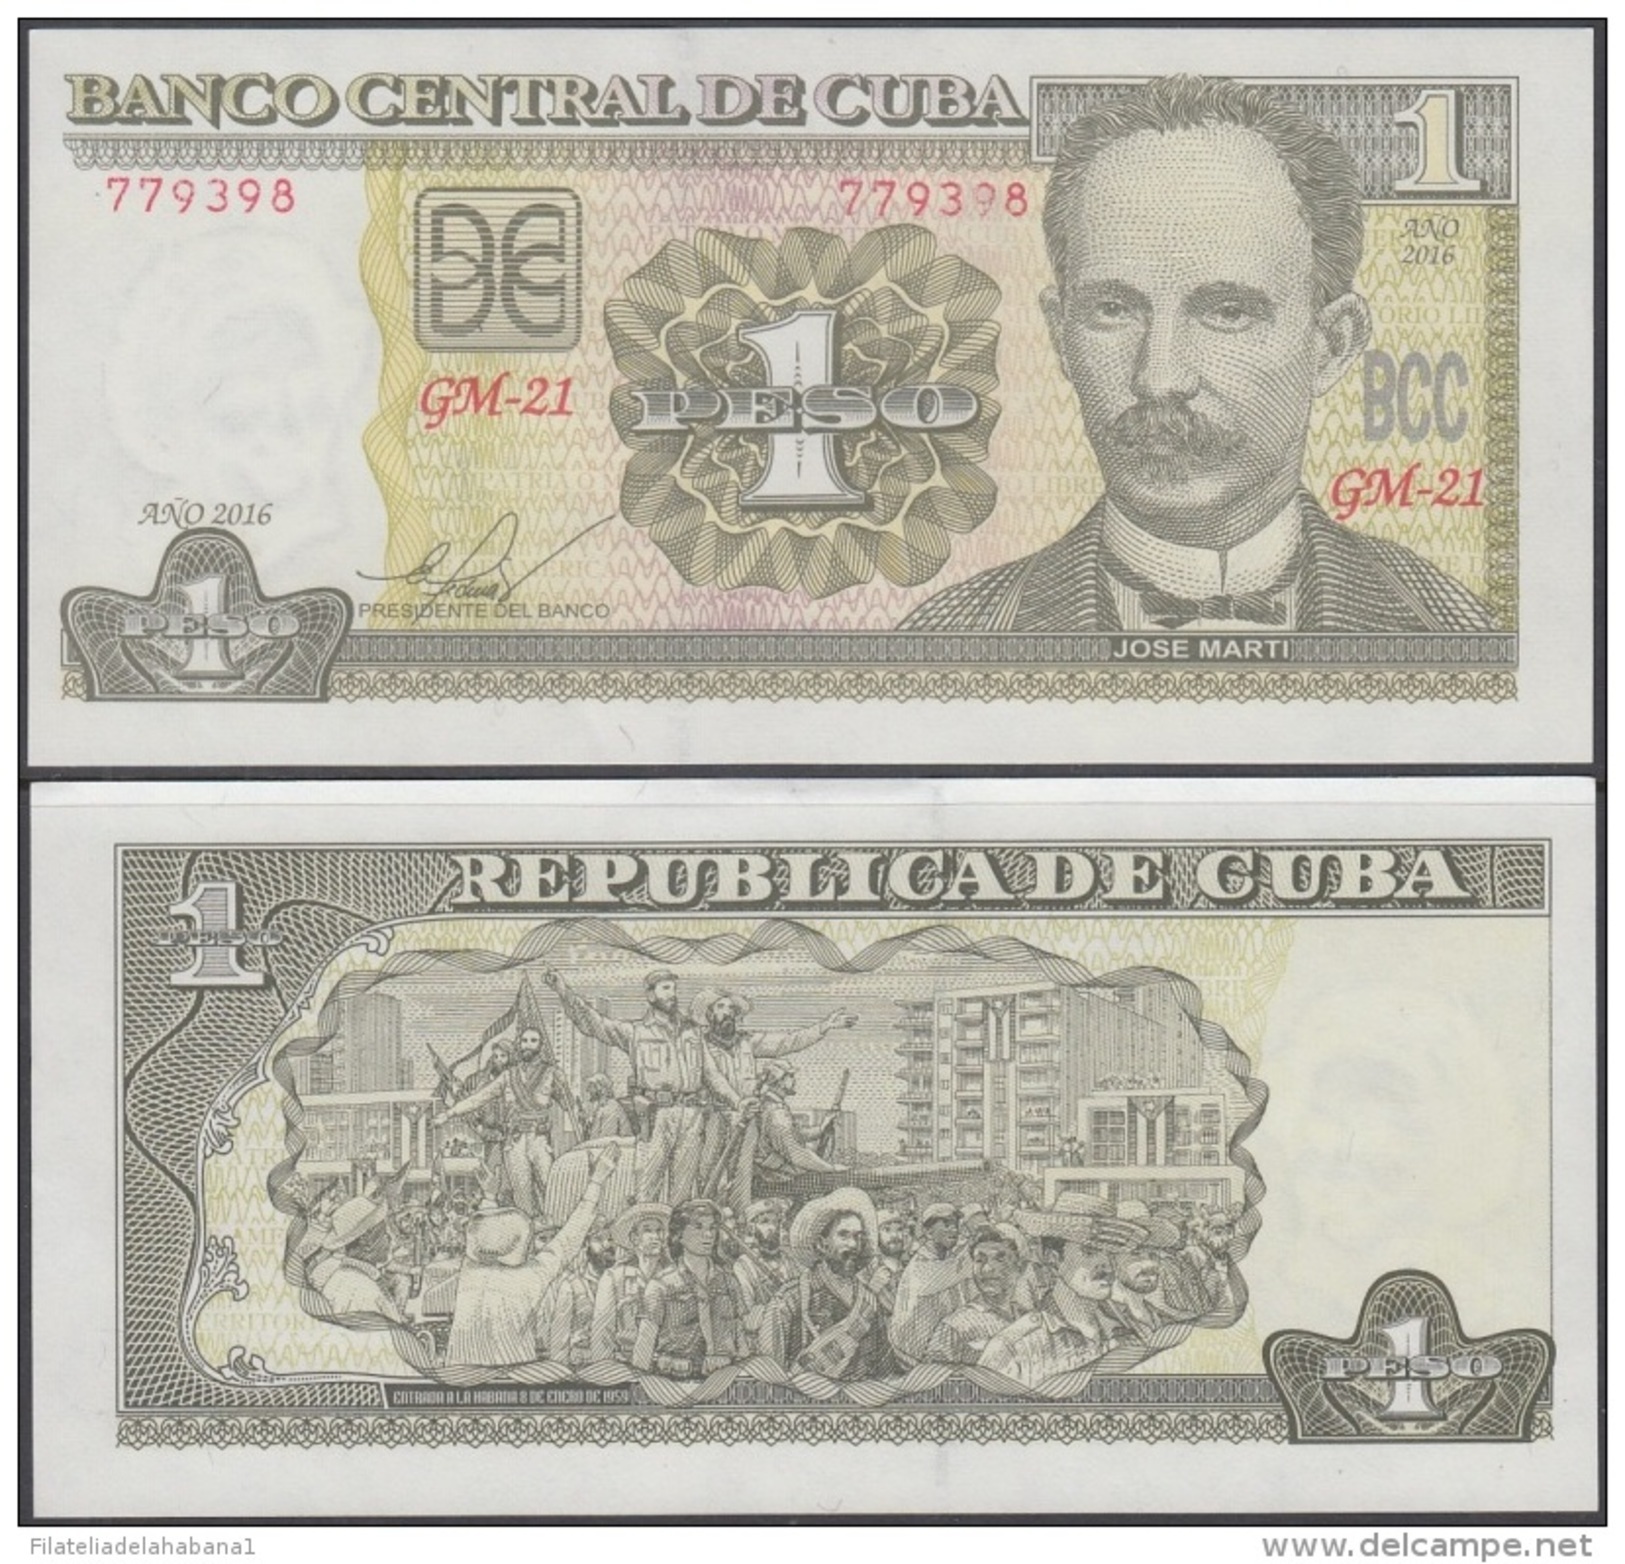 2016-BK-5 CUBA 1$ 2016 JOSE MARTI. UNC. - Cuba